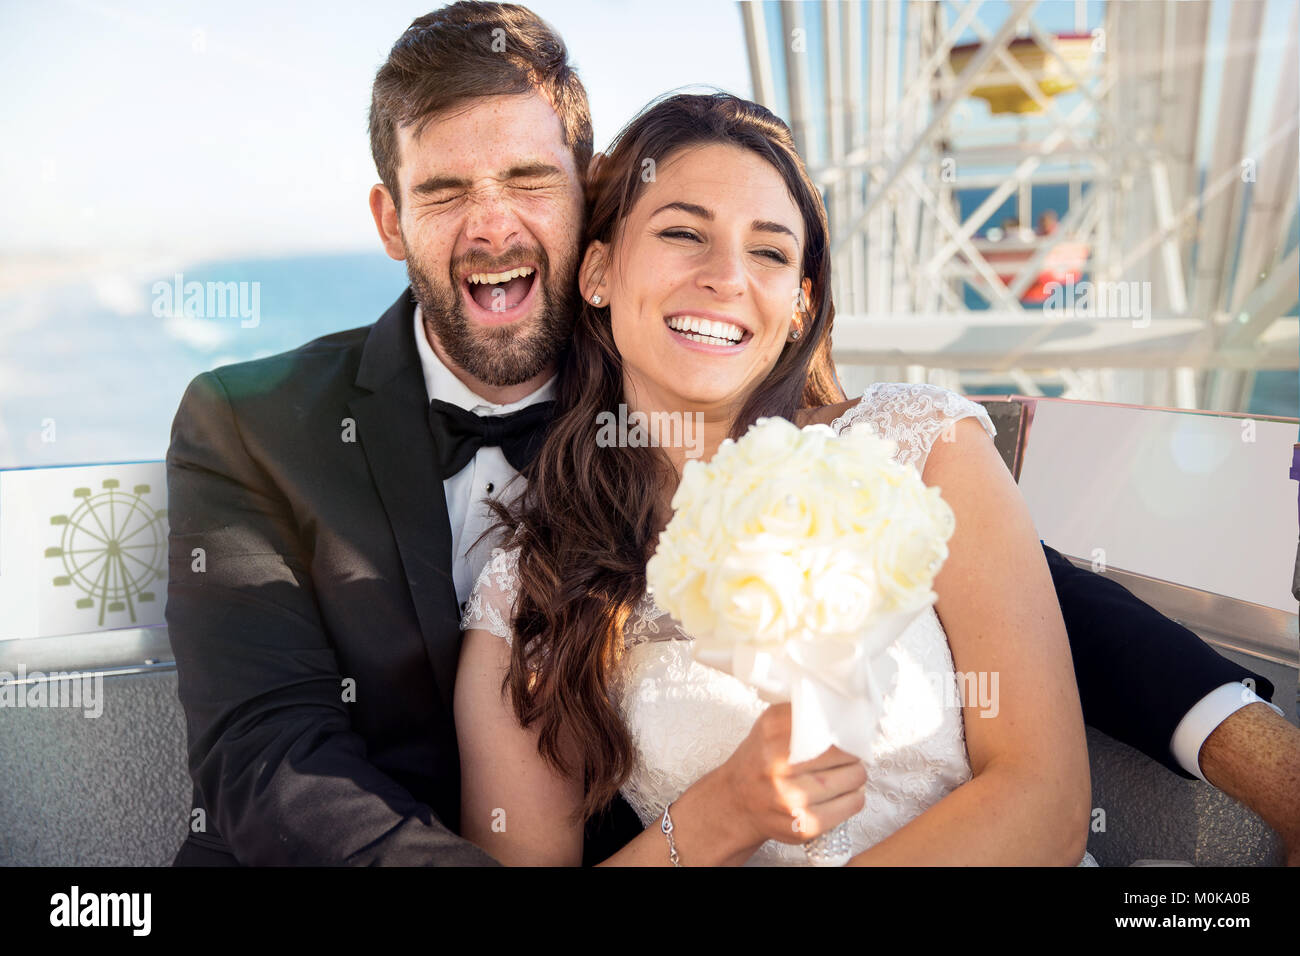 Divertimento carino sposa e lo sposo godendo di uno stile di vita per la luna di miele matrimonio sulla ruota panoramica Ferris Foto Stock